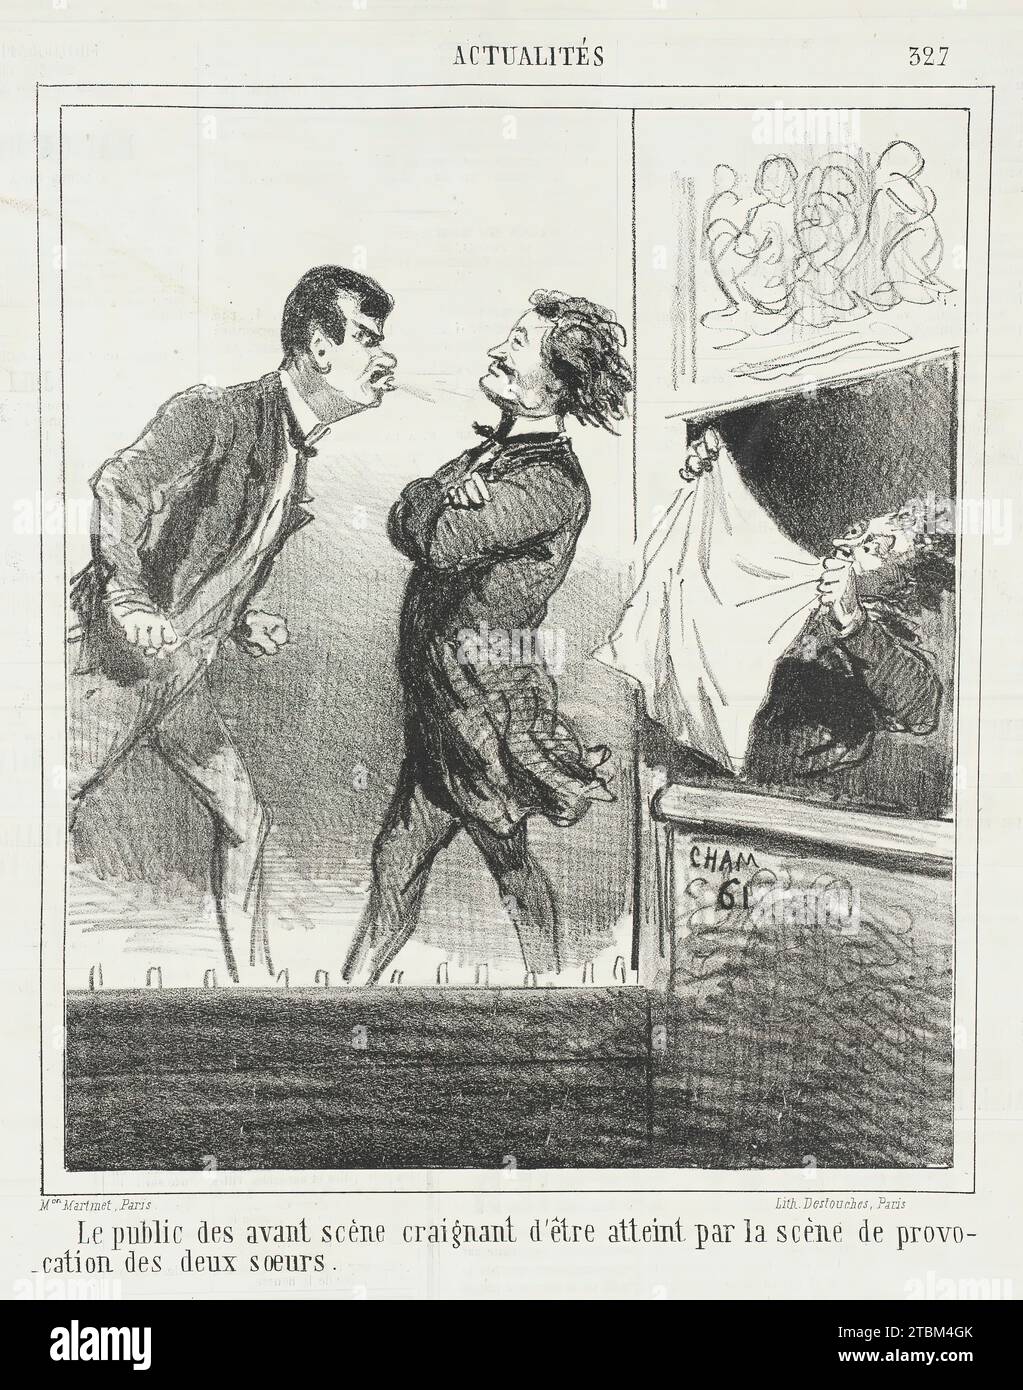 Le public des avant sc&#xe8;nes craignant d'&#xea;tre atteint par la sc&#xe8;ne de provocation des deux soeurs, 1865. From Actualit&#xe9;s. Stock Photo